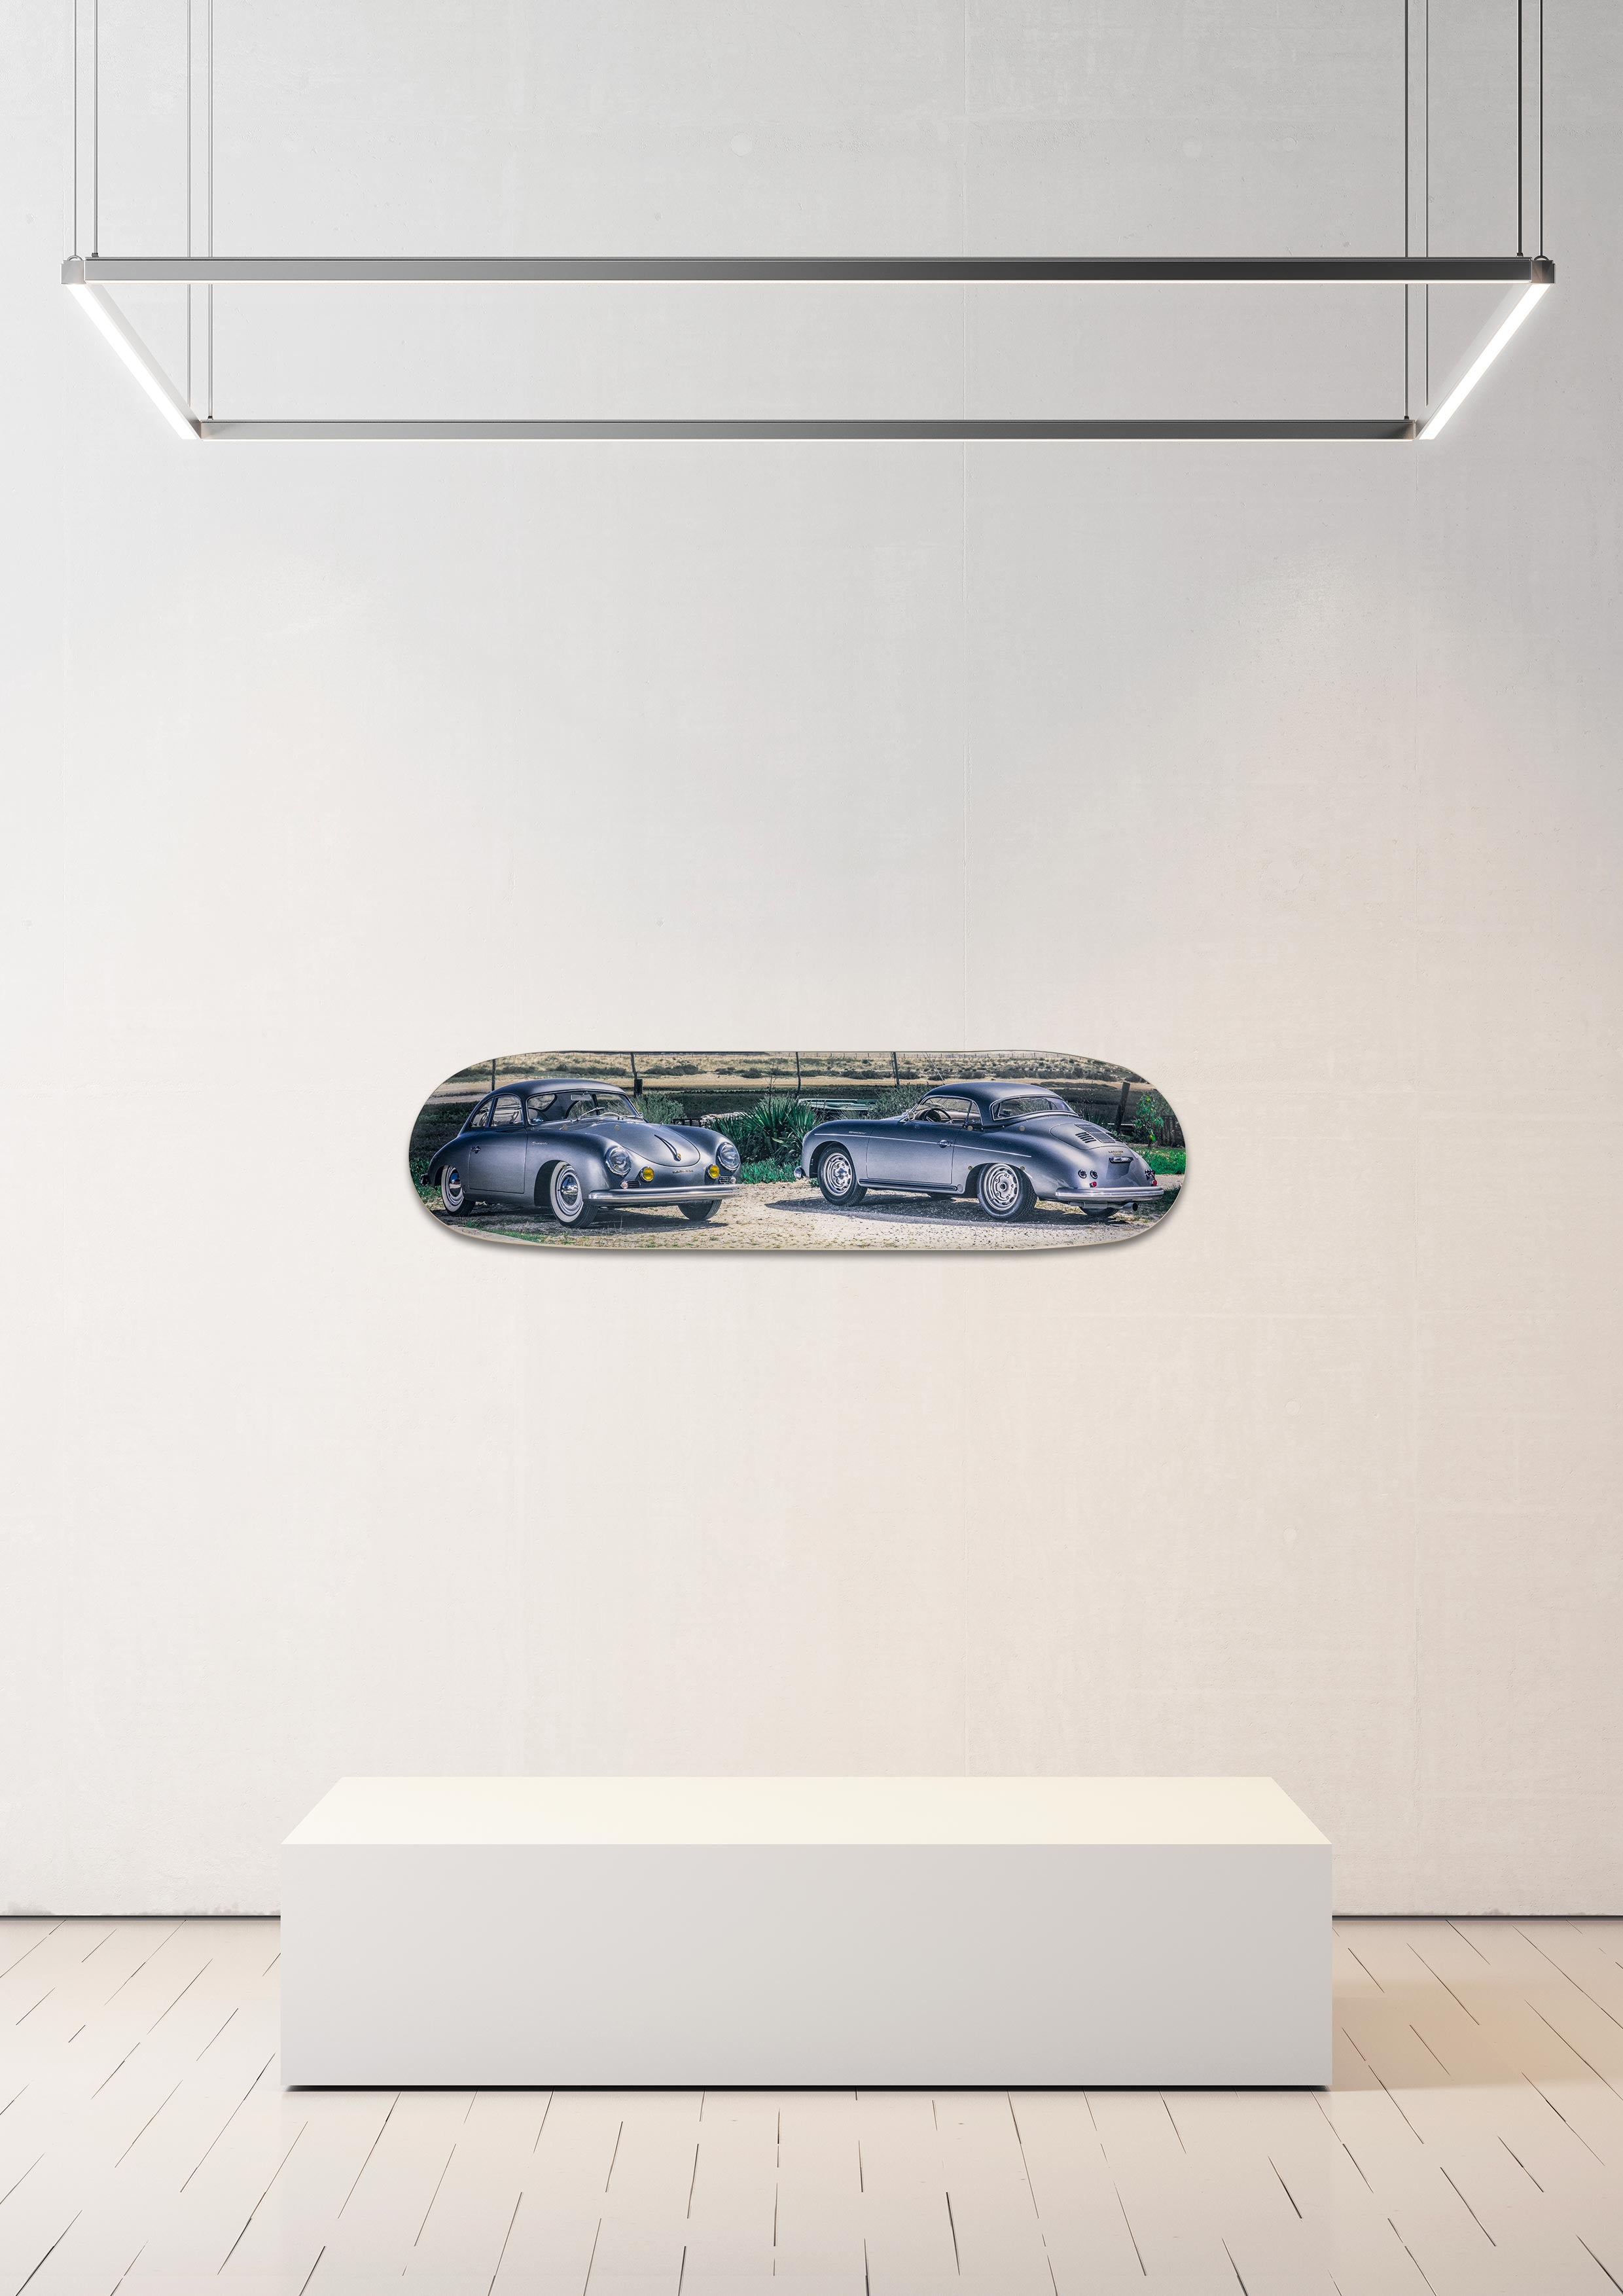 Planche de skate murale - édition très limitée duo de Porsche 356 GT - Serge Heitz